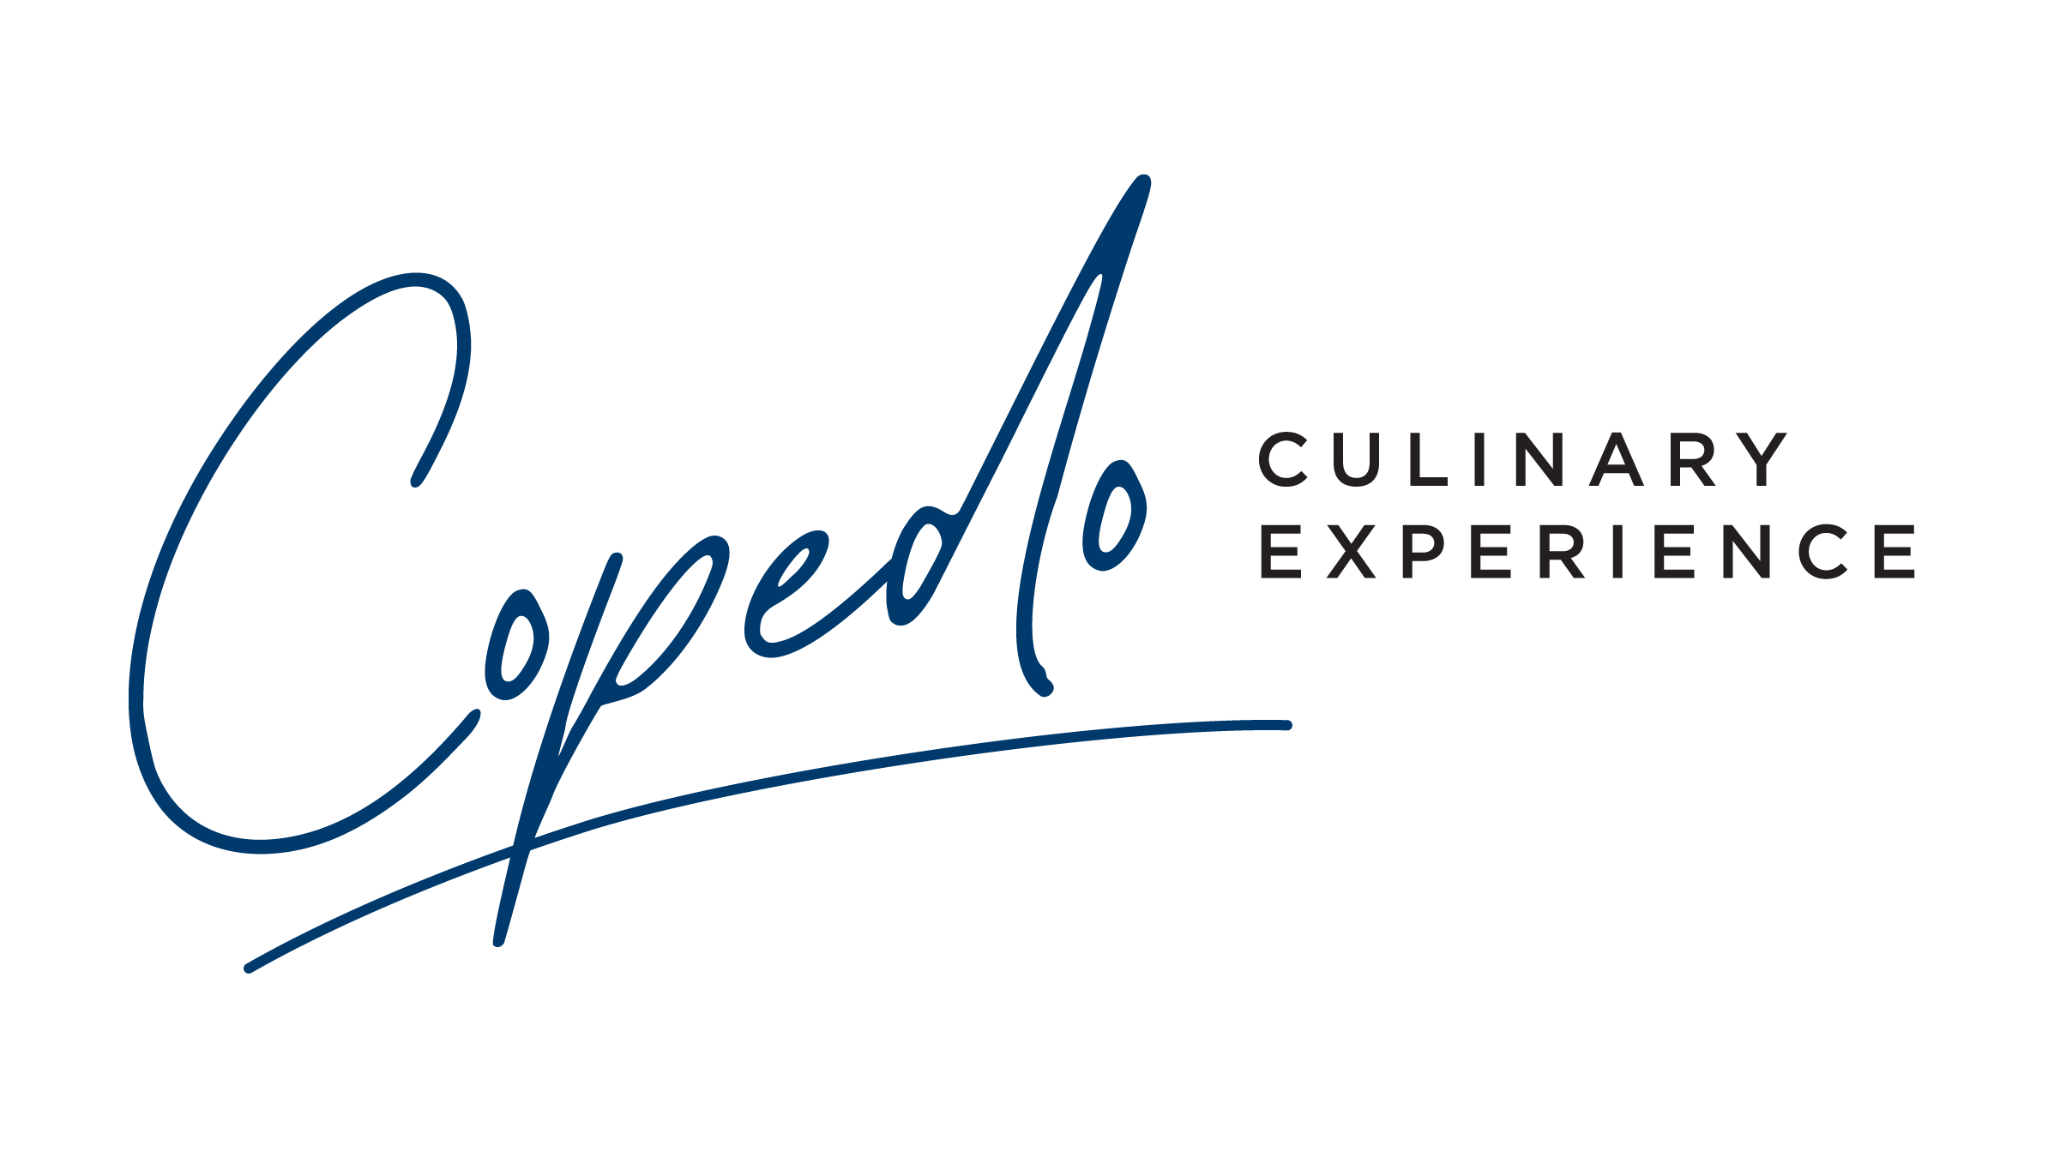 Copedo Culinary Experience